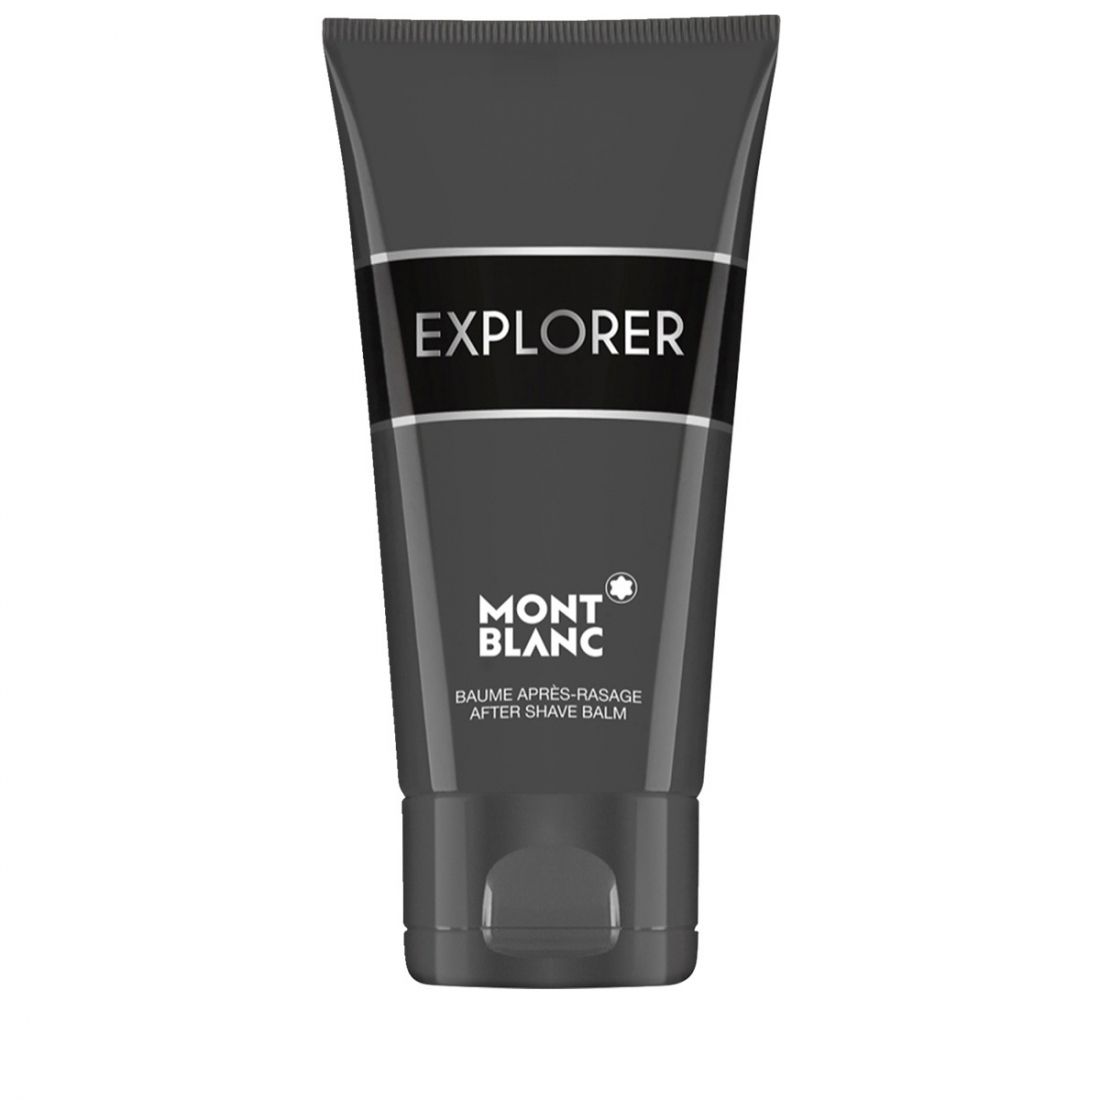 Montblanc - Baume après-rasage 'Explorer' - 150 ml